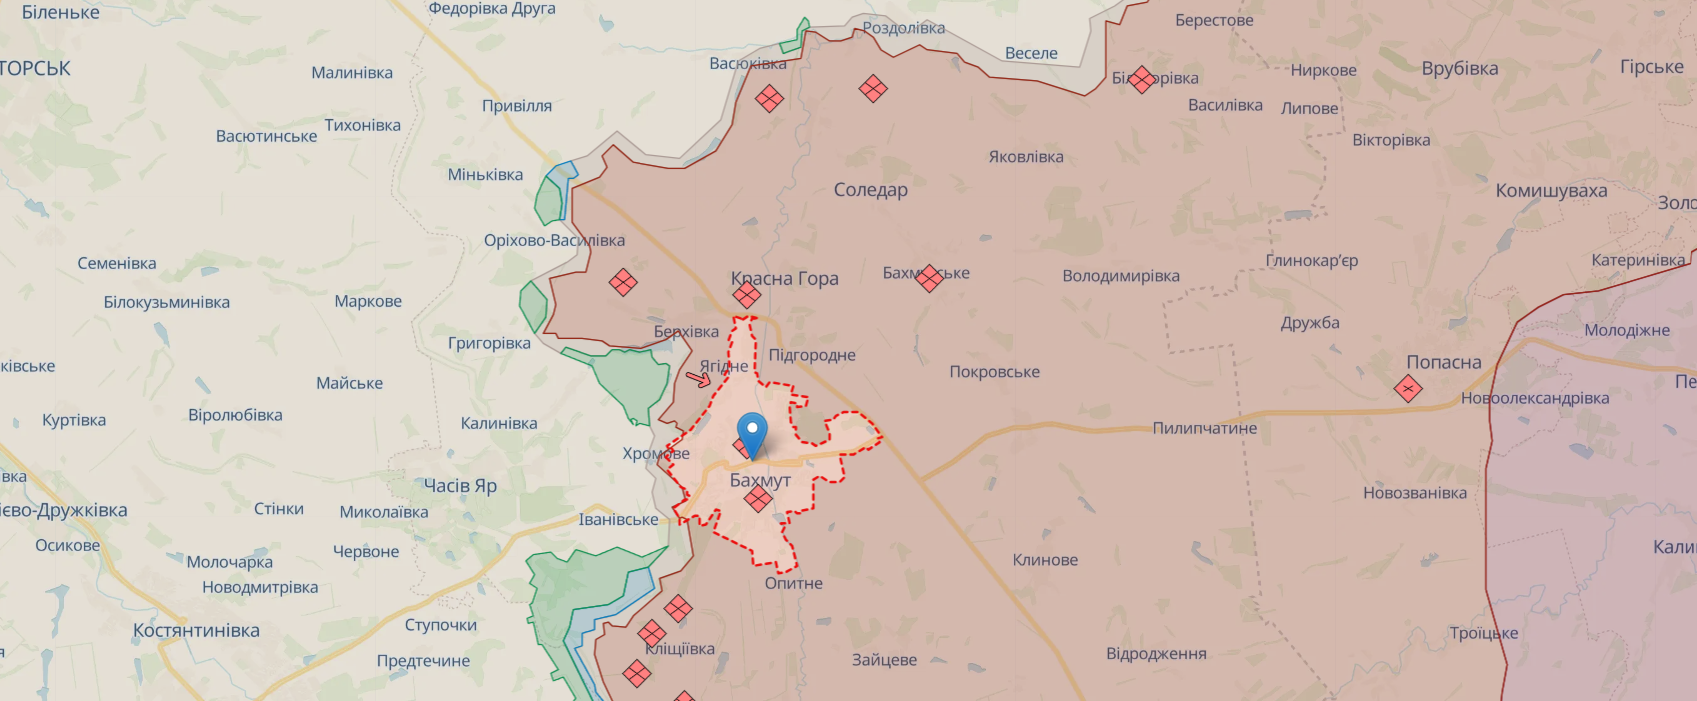 Ukraińskie Siły Zbrojne dokonały ataku w pobliżu Bakhmut, zniszczyły wrogi moździerz i skład amunicji. Wideo